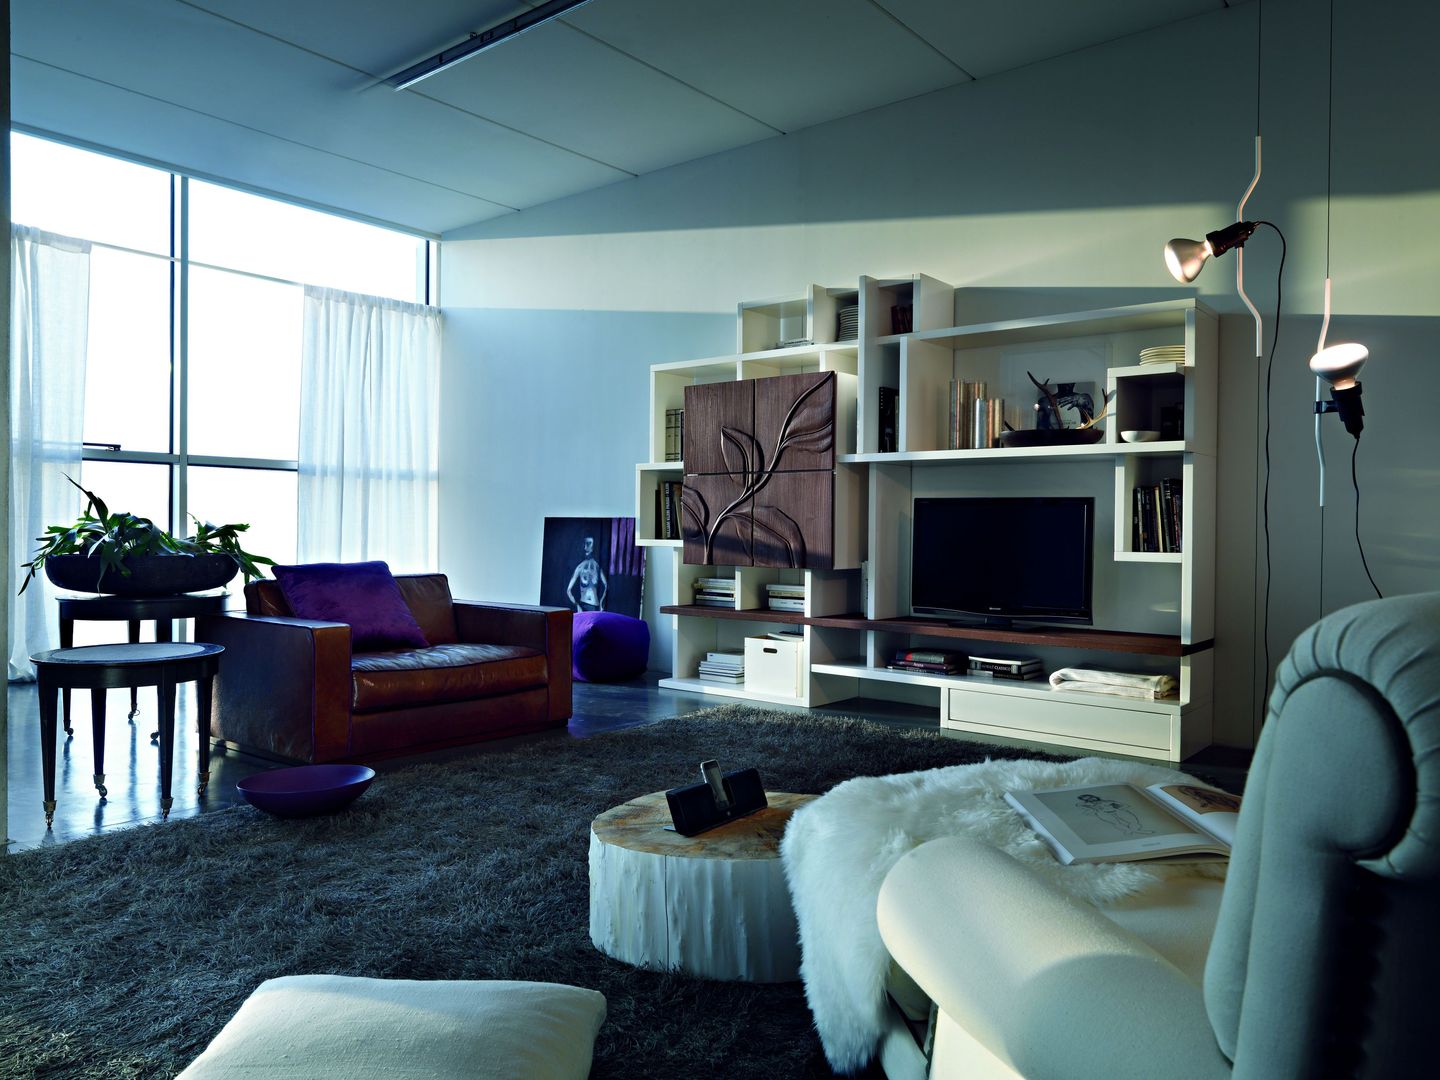 Geometric Living Room Furniture Casa Più Arredamenti living room furniture